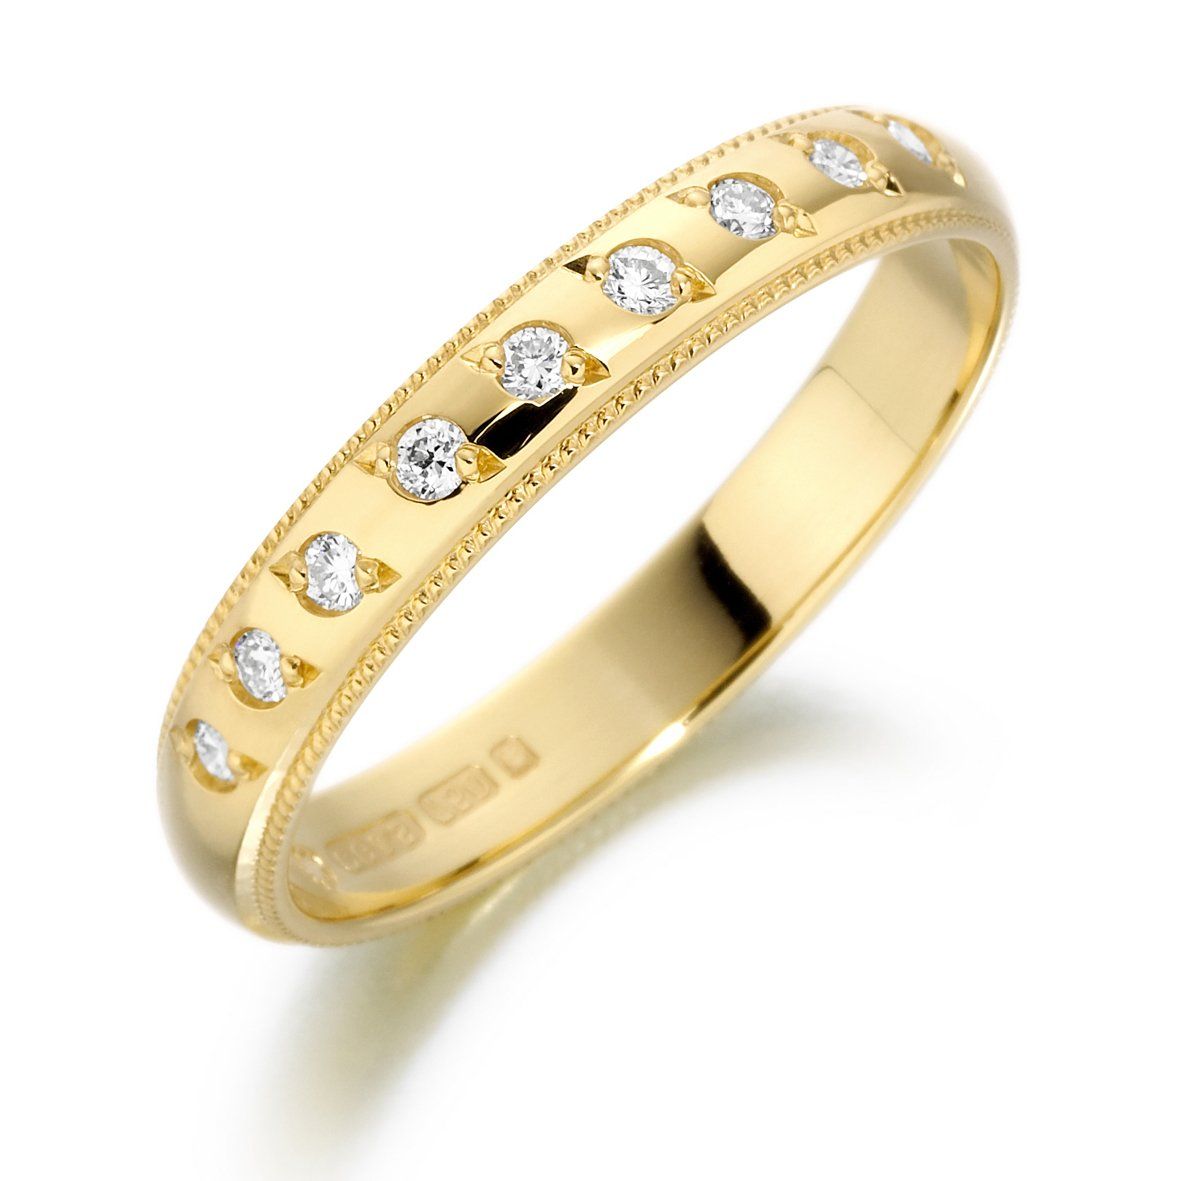 Gold кольца. Золотое кольцо обручалка. Кольцо Голд Даймонд. Кольцо обручальное женское. Кольцо обручальное женское золотое.